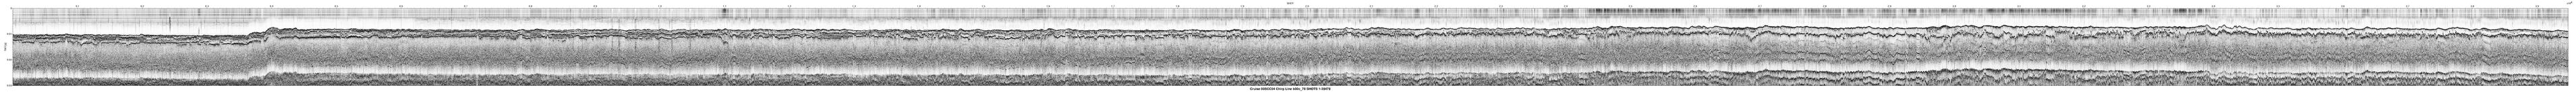 00SCC04 b00c_78 seismic profile image